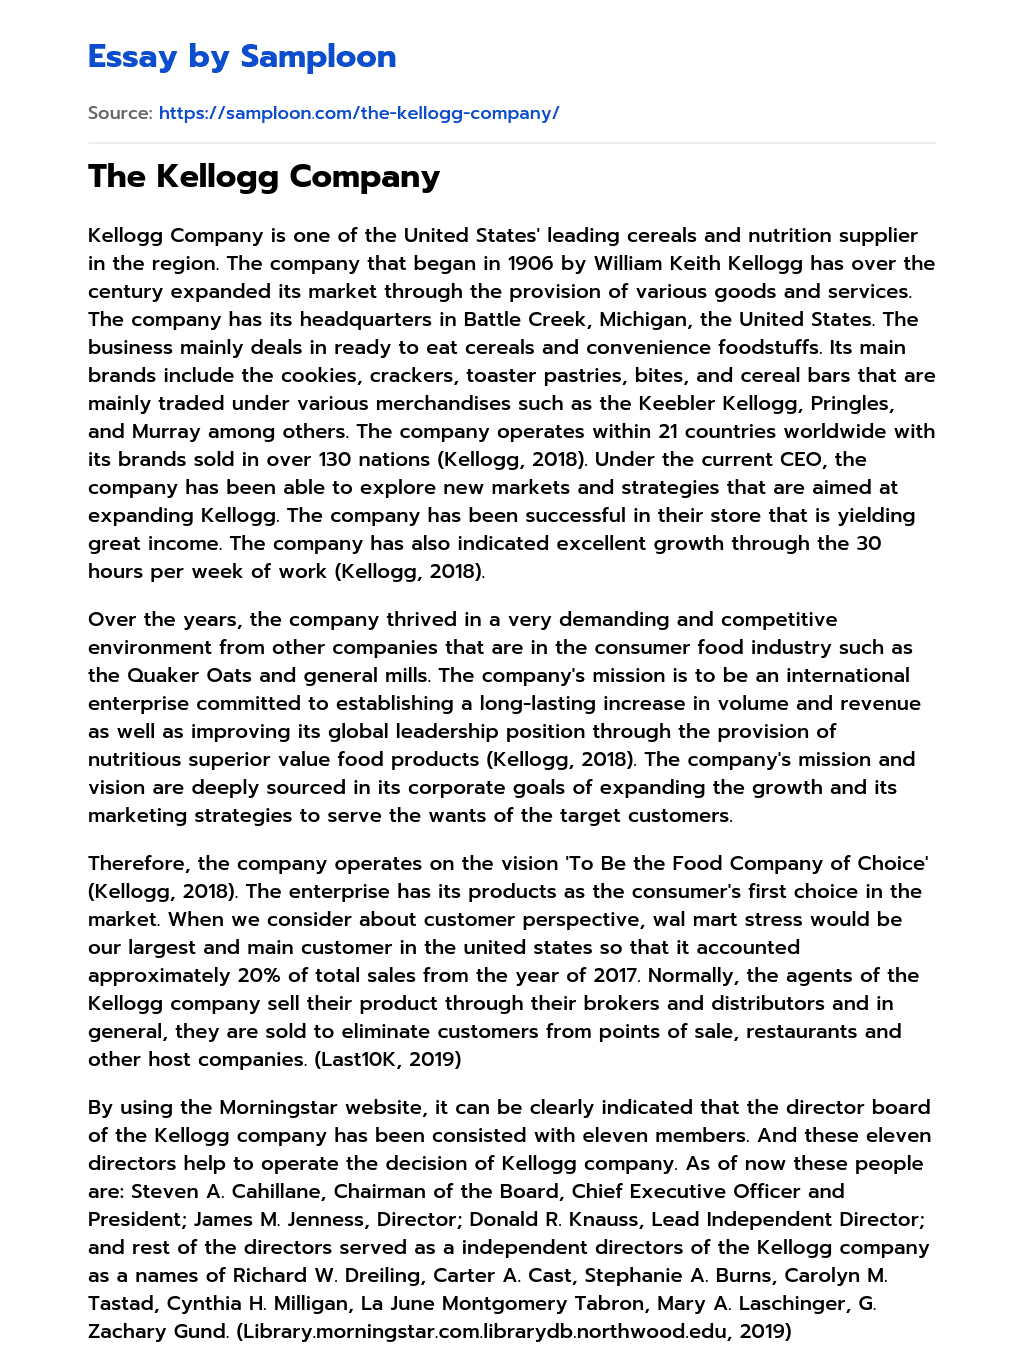 The Kellogg Company essay